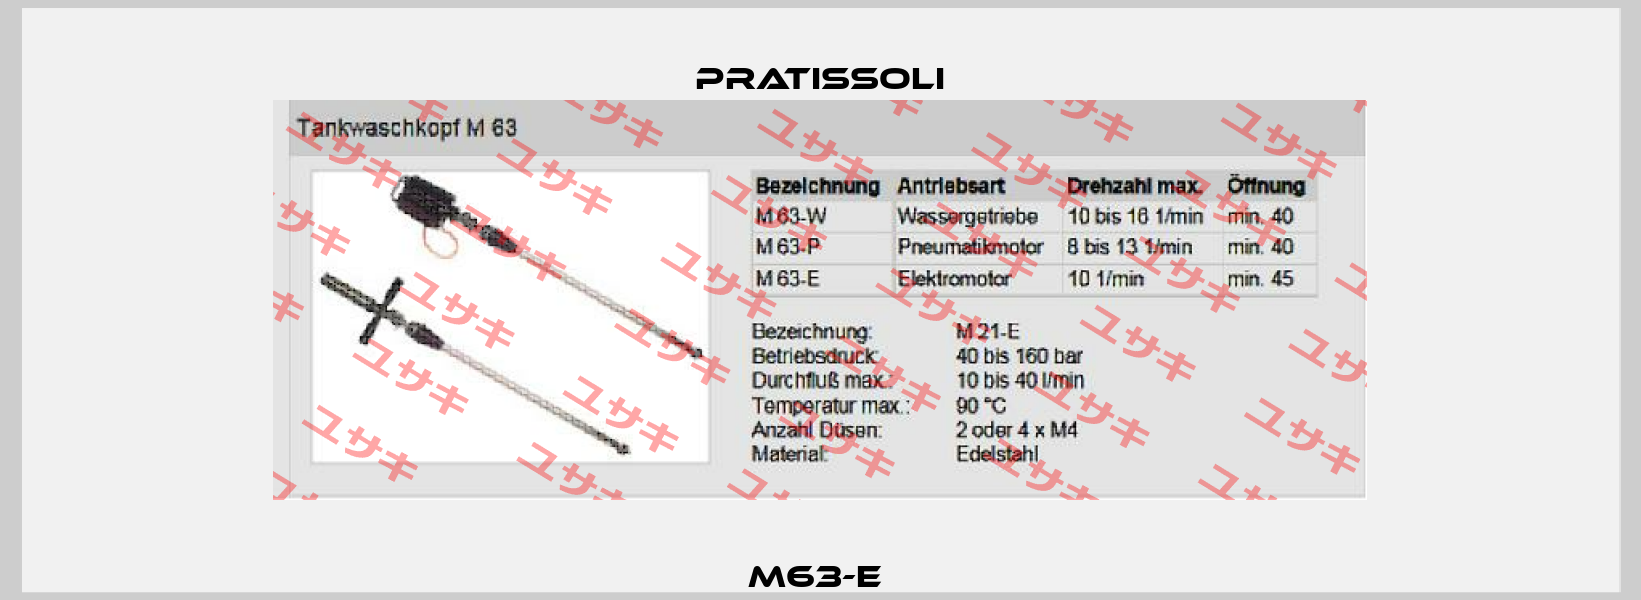 M63-E  Pratissoli